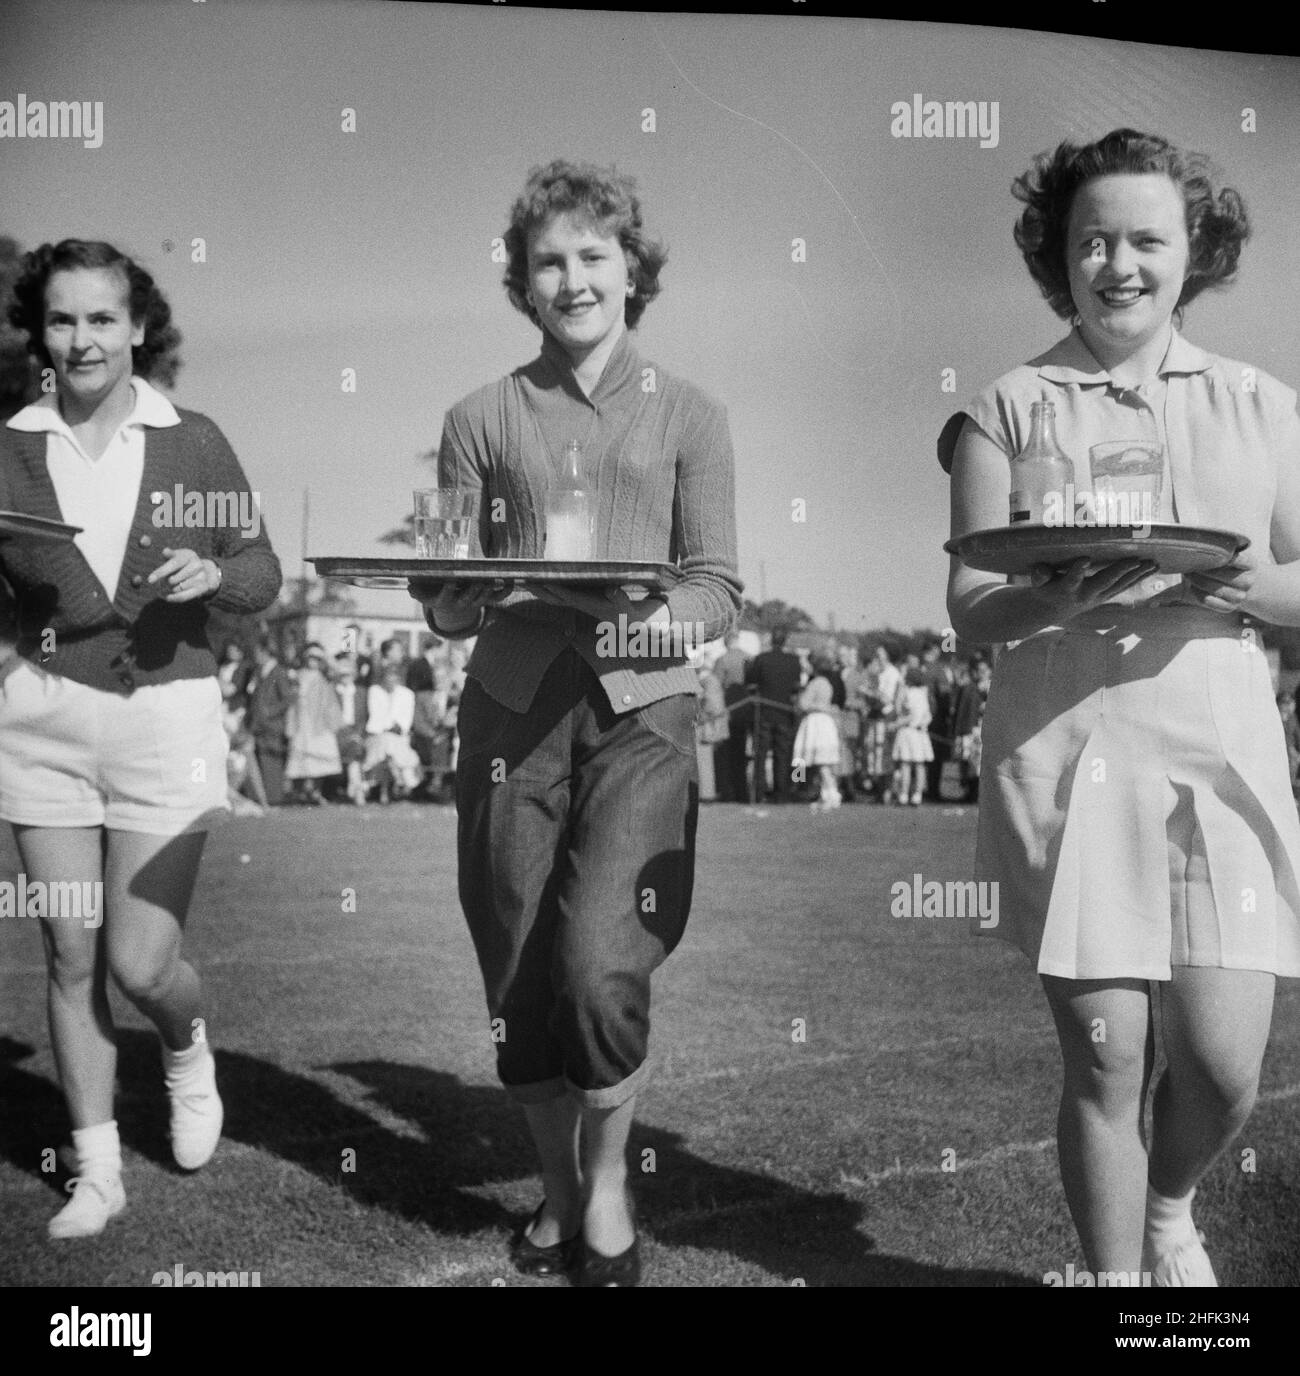 Laing Sports Ground, Rowley Lane, Elstree, Barnett, Londres,18/06/1955.Trois femmes avec des plateaux de rafraîchissements en compétition lors d'une course de serveuse lors d'une journée de sport Laing à Elstree.Cette journée sportive a été suivie par des personnes de Laing Contracts à Thurleigh, Bradford, Harlow, Shell Haven, Londres,Welwyn Garden City, Leicester et même jusqu'à Plymouth.La journée comprenait des compétitions sur le terrain et sur piste ainsi que des attractions spéciales, dont la danse écossaise, un spectacle de fleurs, des expositions de gymnastique et de la musique du Silver Band de la brigade des garçons de la Hendon Company 5th. Banque D'Images